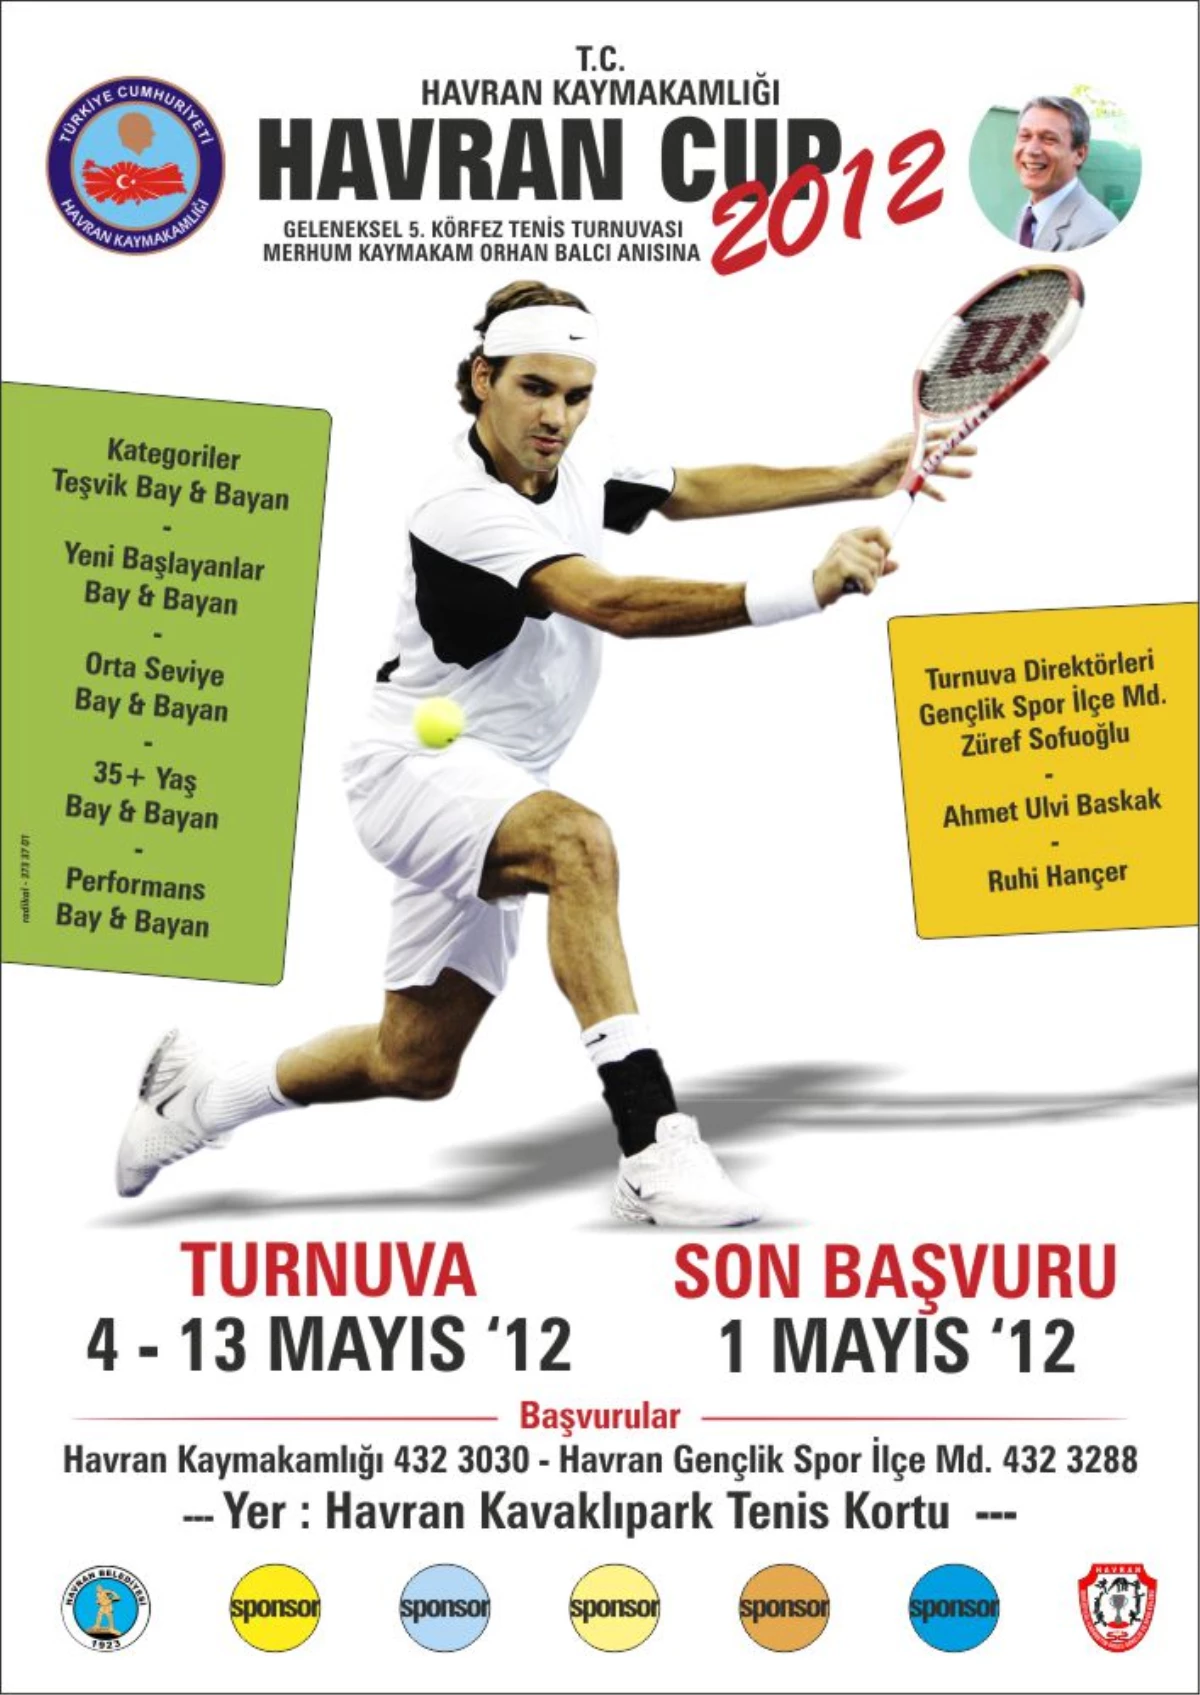 Rahmetli Kaymakam Orhan Balcı Anısına Tenis Turnuvası Düzenlendi